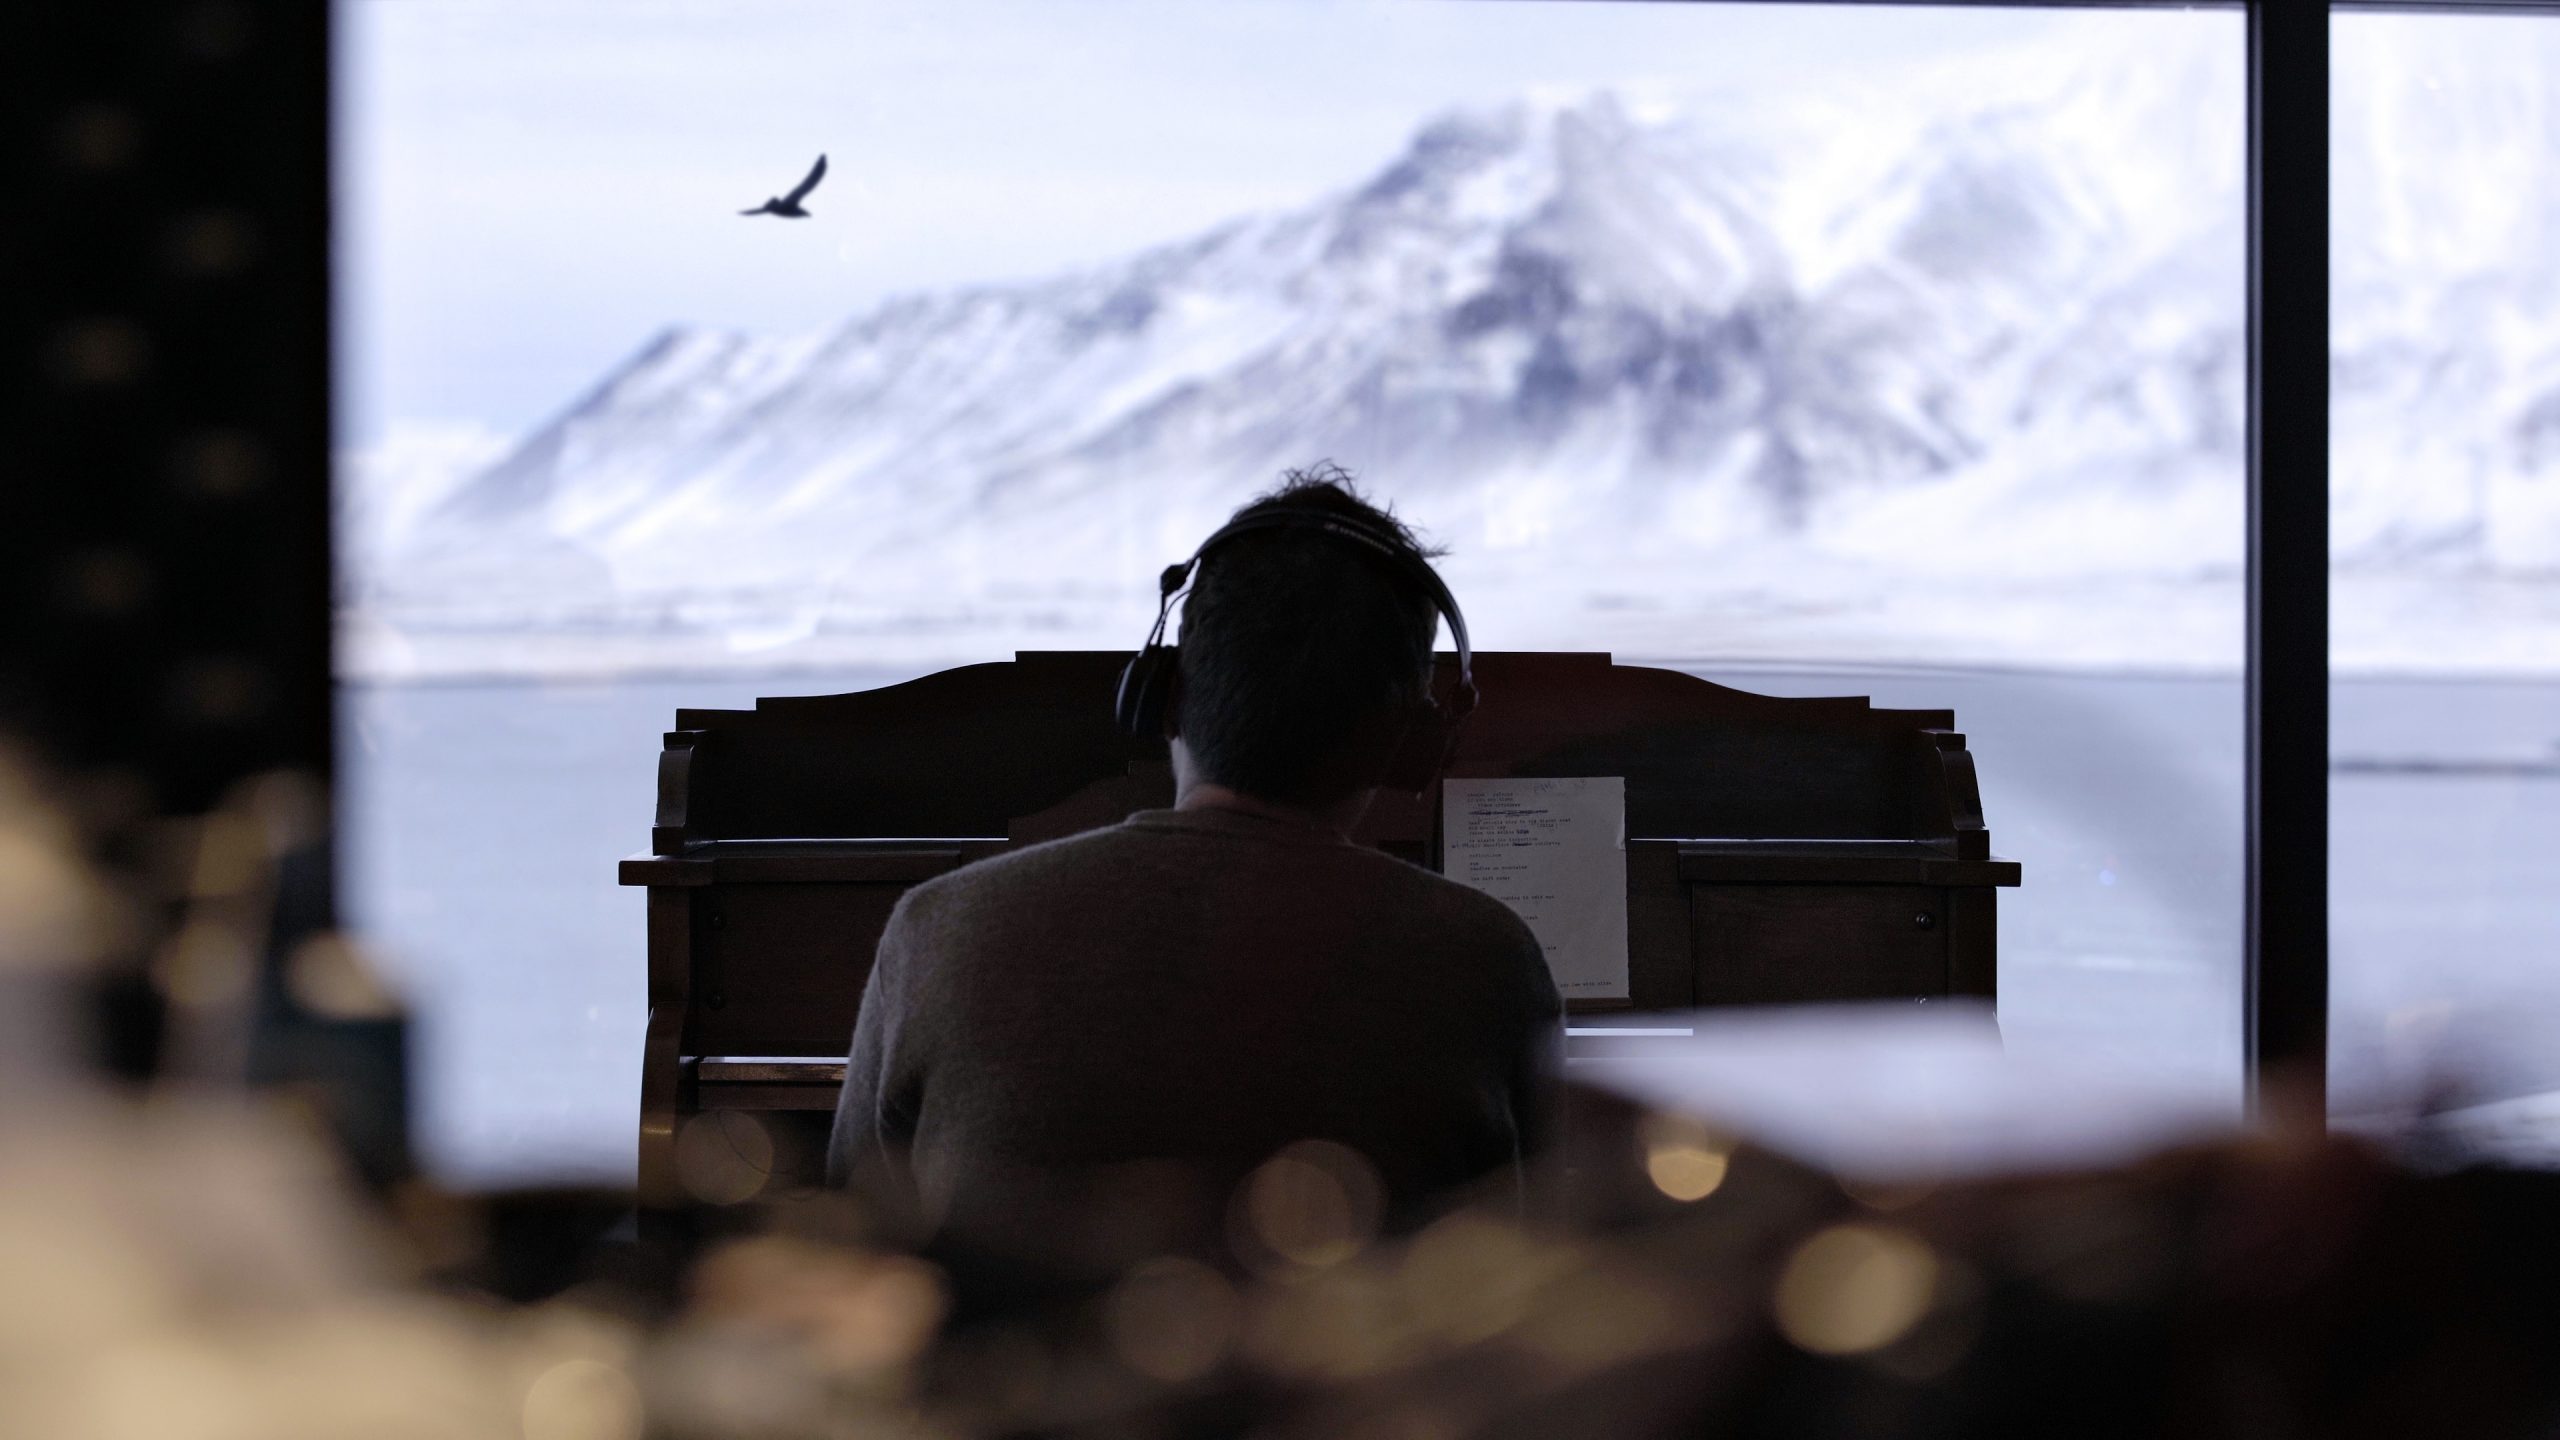 The Nearer the Fountain, More Pure the Stream Flows es el nuevo proyecto musical de Damon Albarn inspirado en los paisajes de Islandia